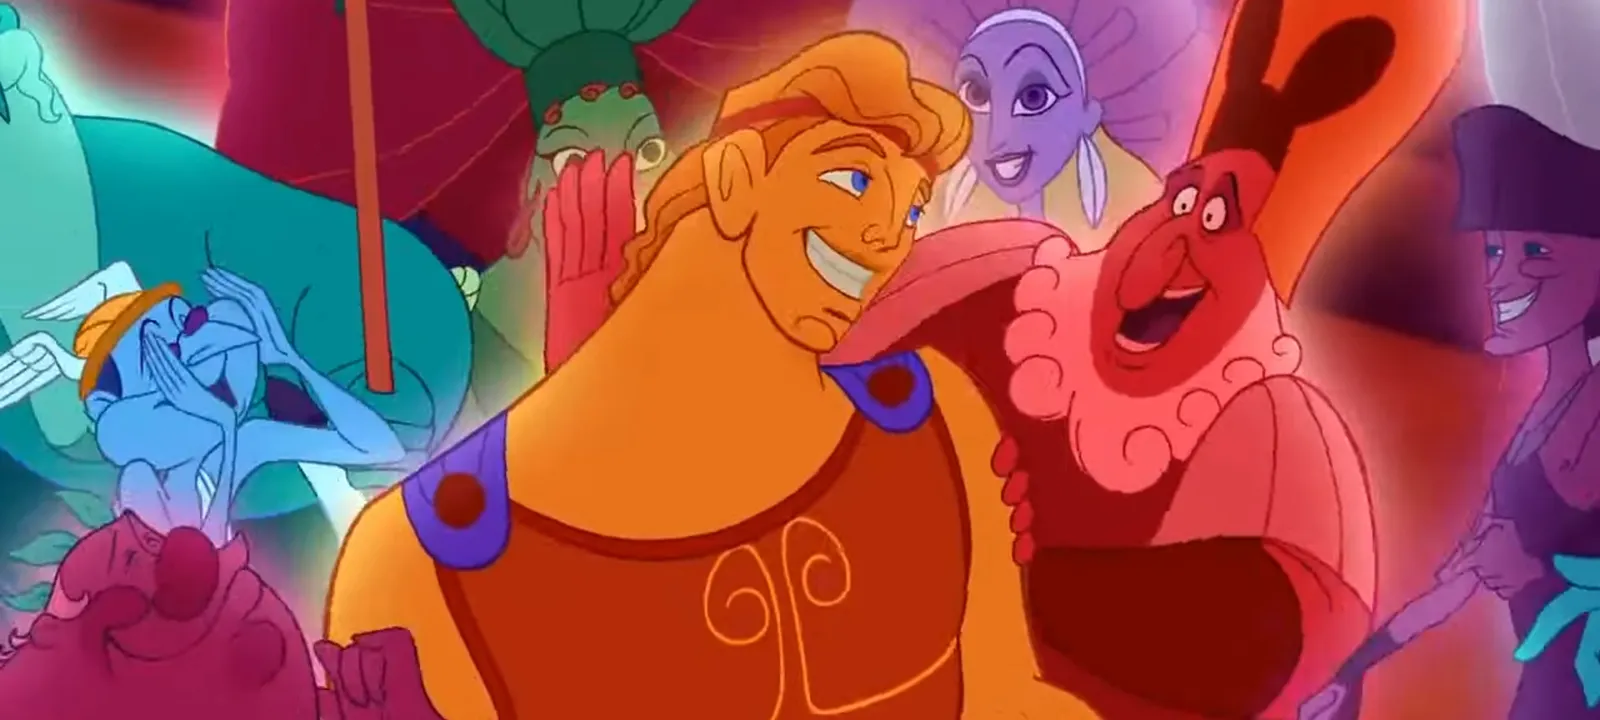 Film Animasi 'Hercules' akan Dibuat Versi Live Action, ini Faktanya!